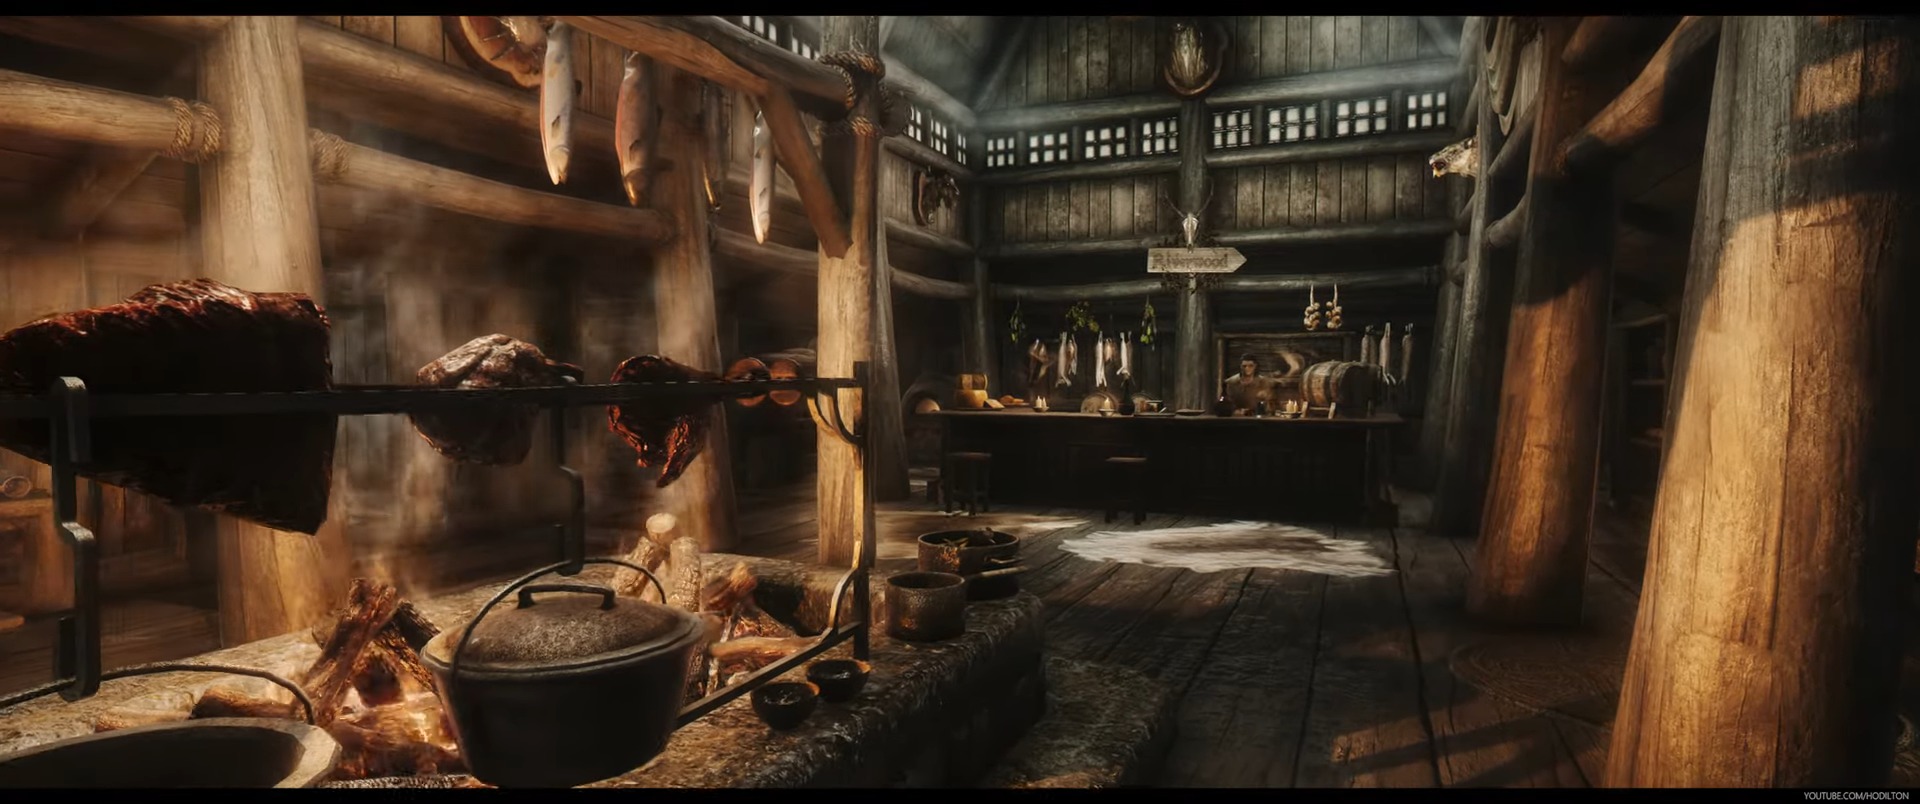 Elder Scrolls 5 Skyrim Special Edition Weekly Mod Showcase 6/19 – Follower Enhancements And Jk Sleeping Giant Inn